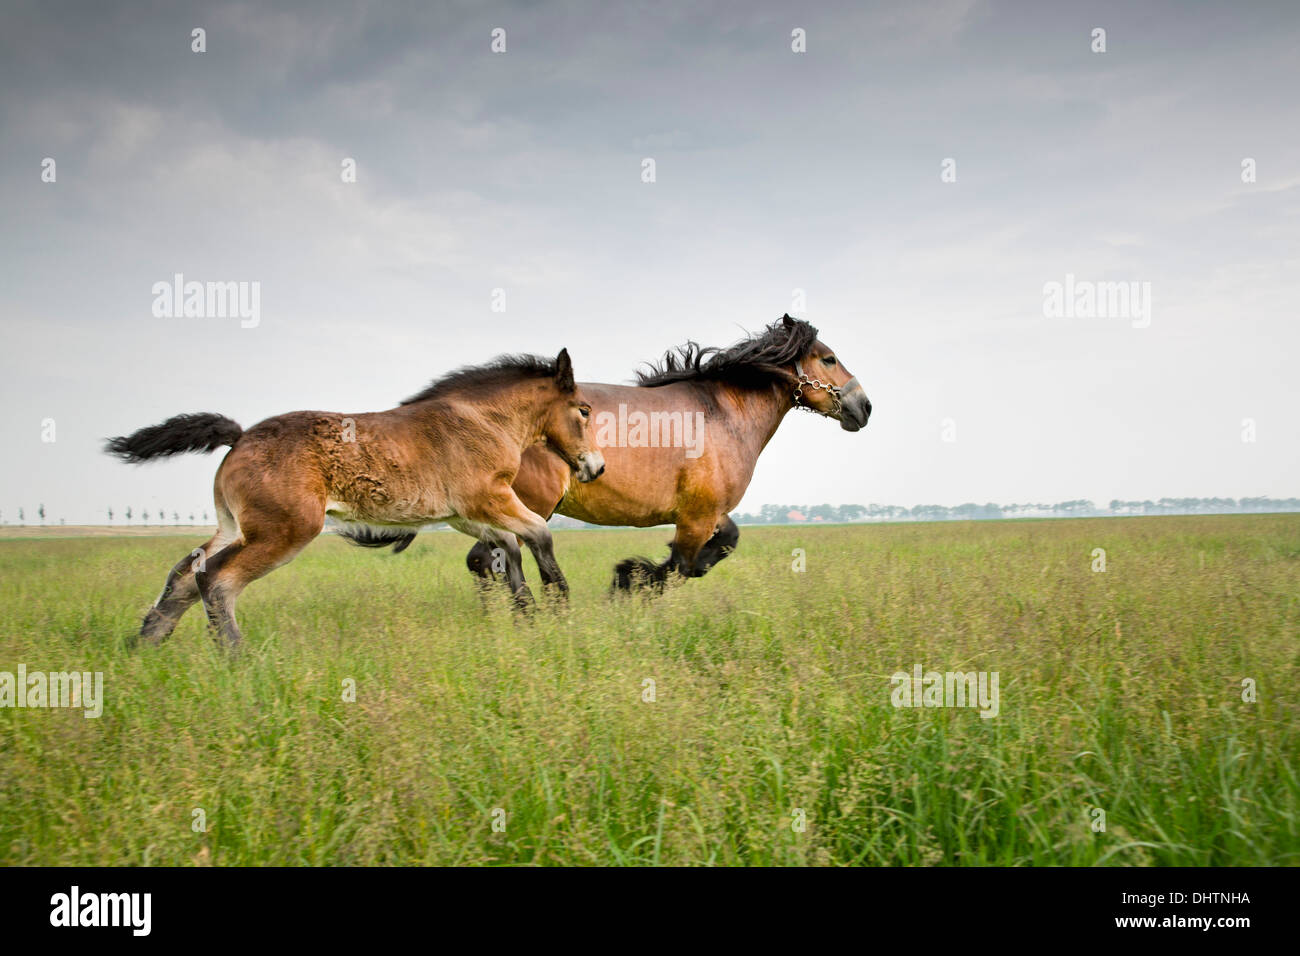 Pays-bas, Axat, polder de Beemster, UNESCO World Heritage Site. Ou 225 chevaux de trait belge Banque D'Images